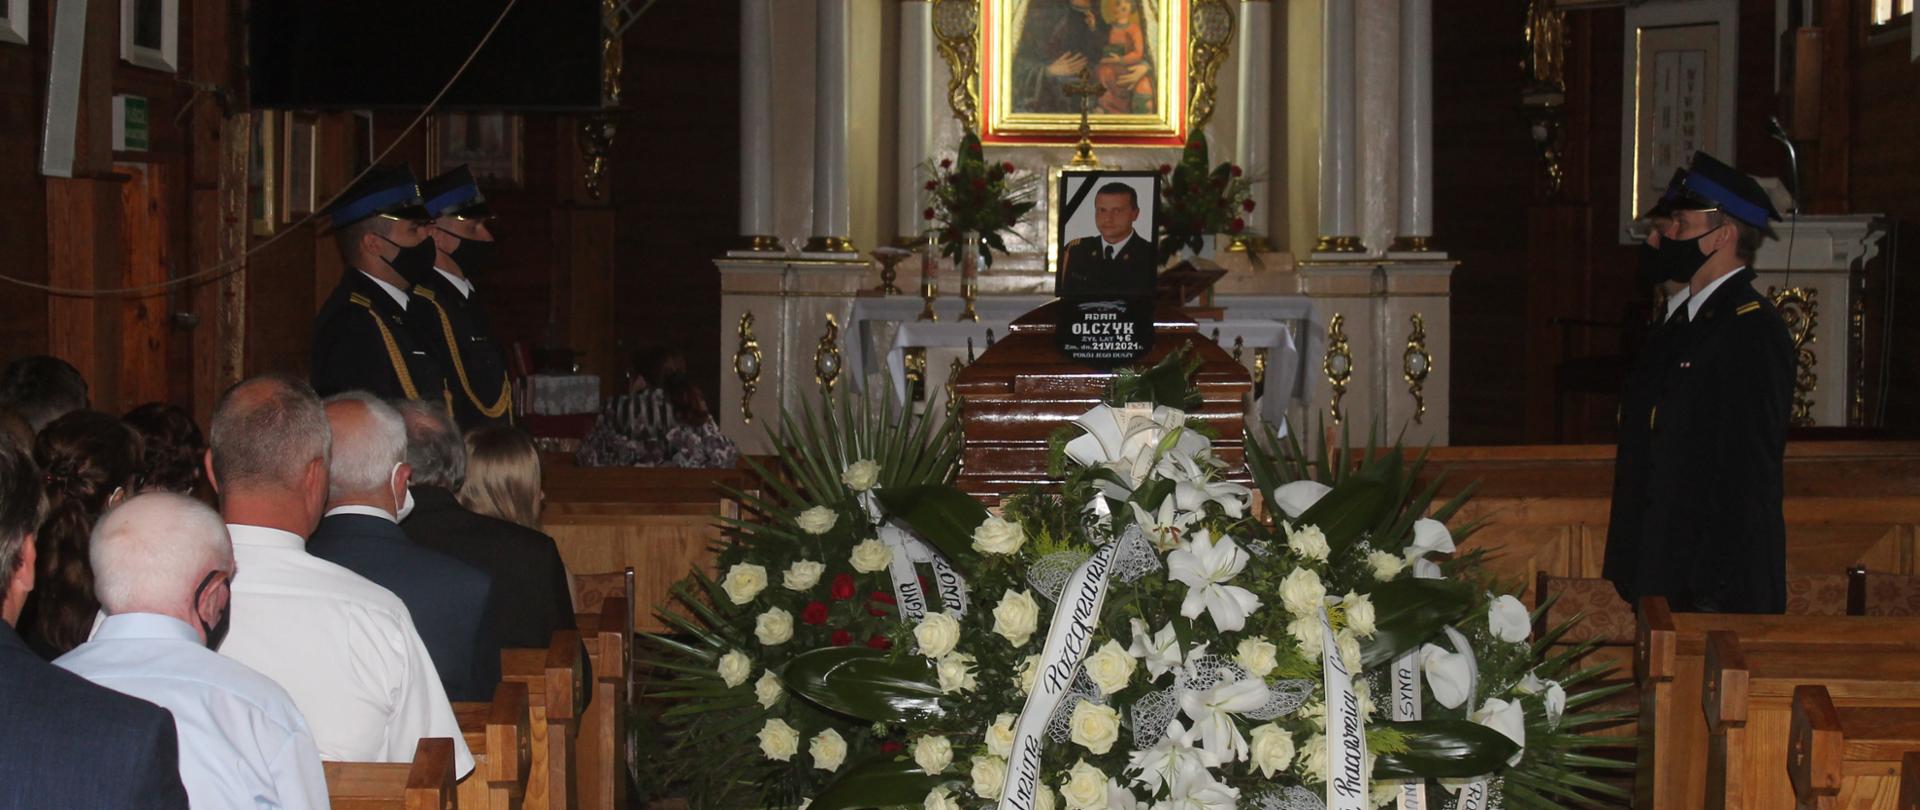 Zdjęcie przedstawia uroczystość pogrzebową st. ogn. Adama Olczyka we wnętrzu kościoła parafialnego w Umieniu. Na zdjęciu widać trumnę ze zdjęciem zmarłego, wartę honorową, wiązanki oraz zgromadzonych w kościele ludzi.